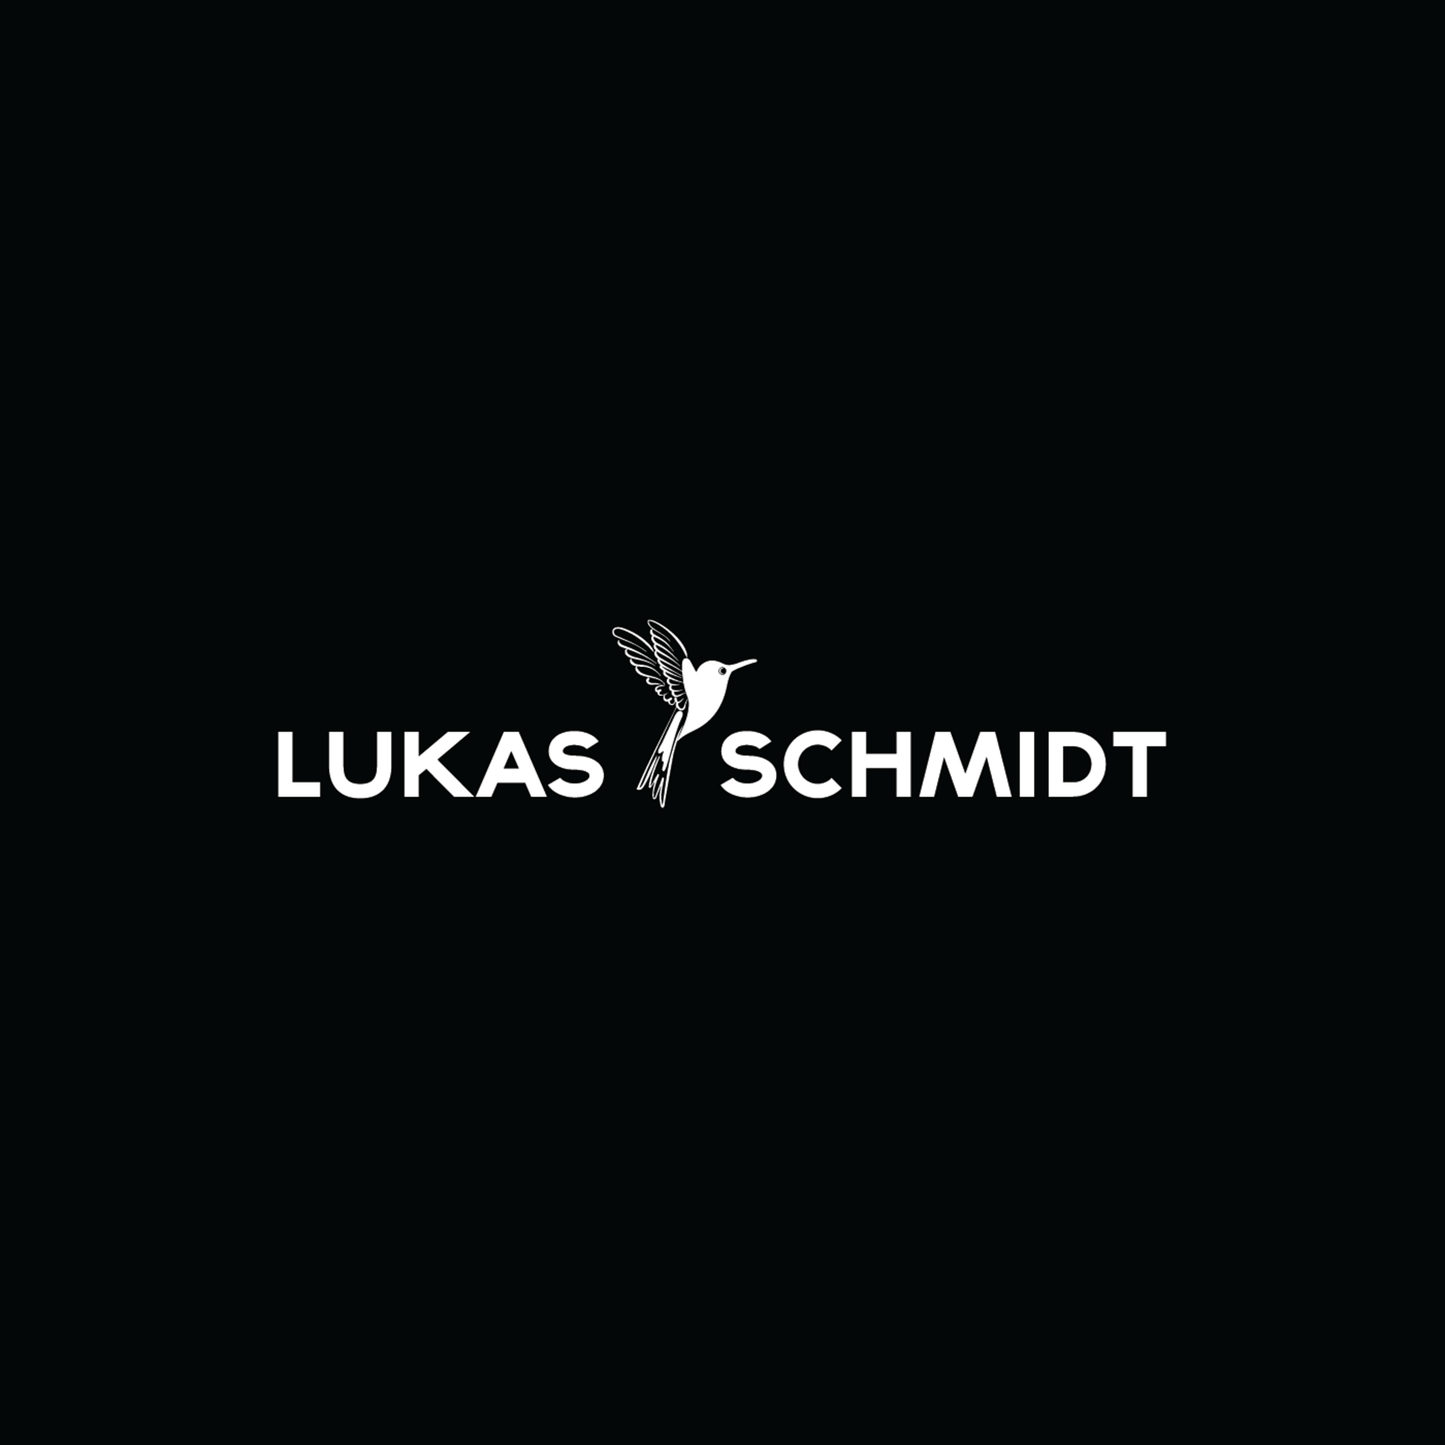 Kollektion kennenlernen / LUKAS SCHMIDT Wein / Termin Anfrage per Mail - Lukas Schmidt Wein